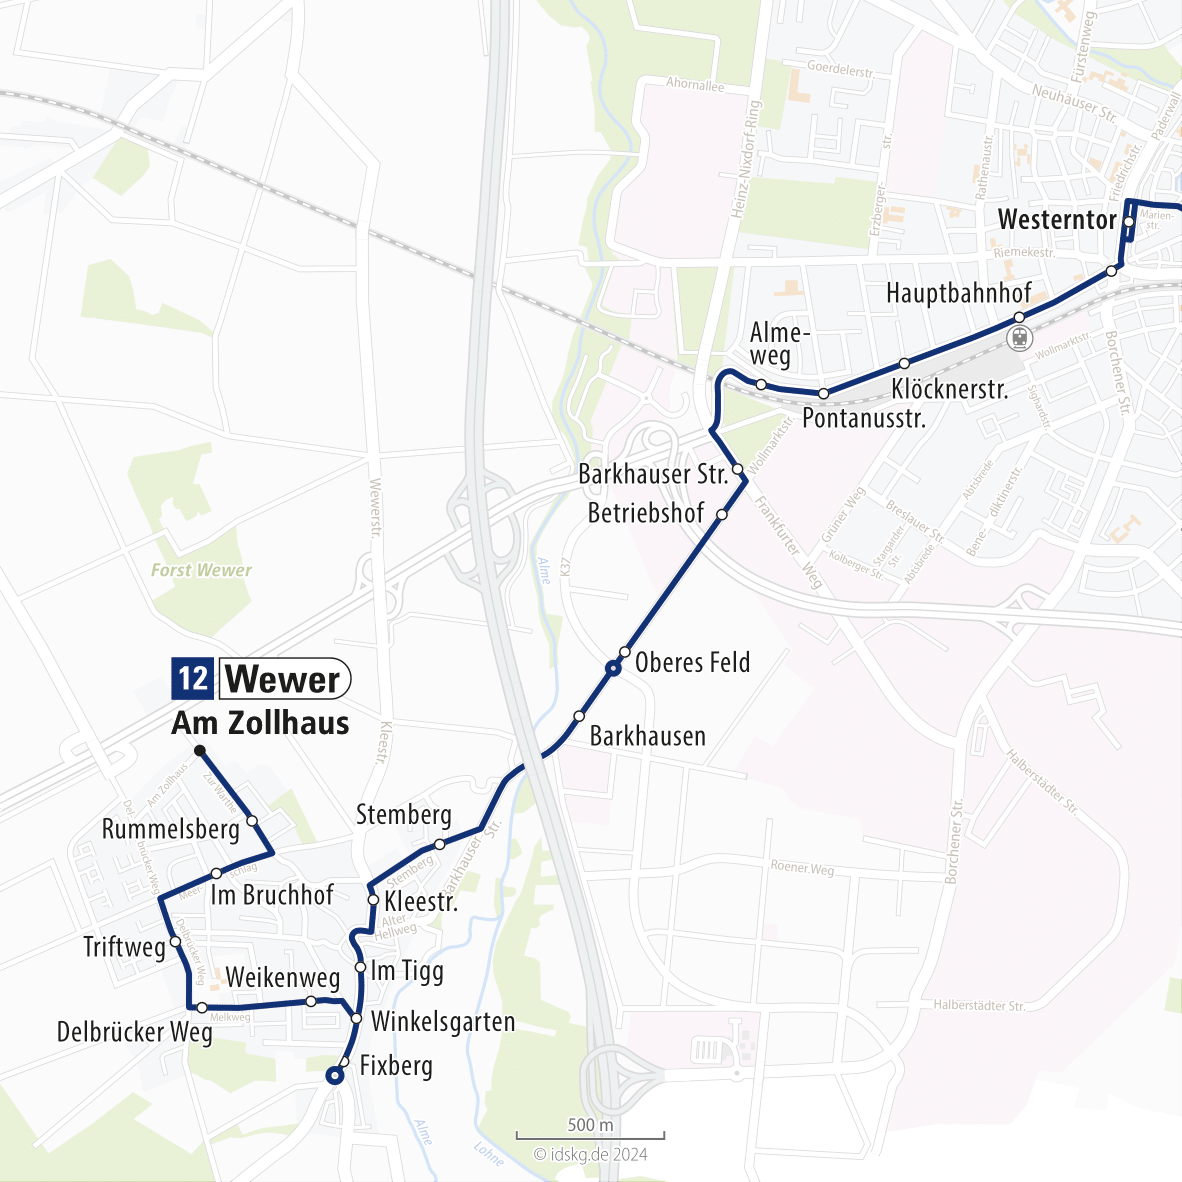 Kartenausschnitt der Linie 12 Wewer bis Westerntor 15x15